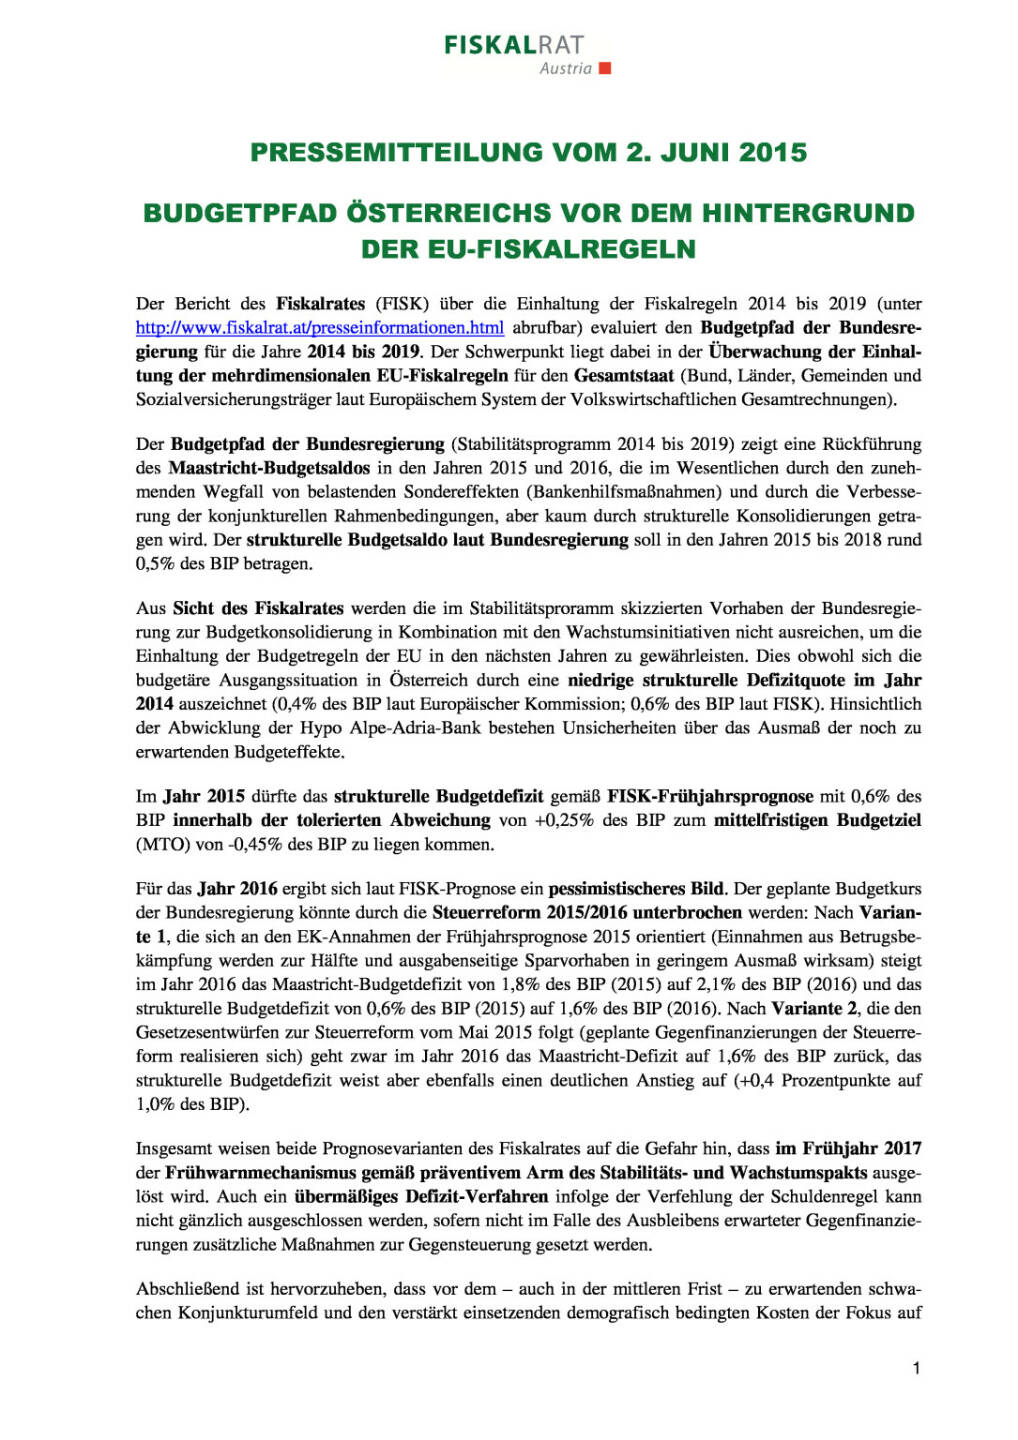 Fiskalrat: Budgetpfad Österreichs vor dem Hintergrund der EU-Fiskalregeln, Seite 1/2, komplettes Dokument unter http://boerse-social.com/static/uploads/file_69_fiskalrat_budgetpfad.pdf